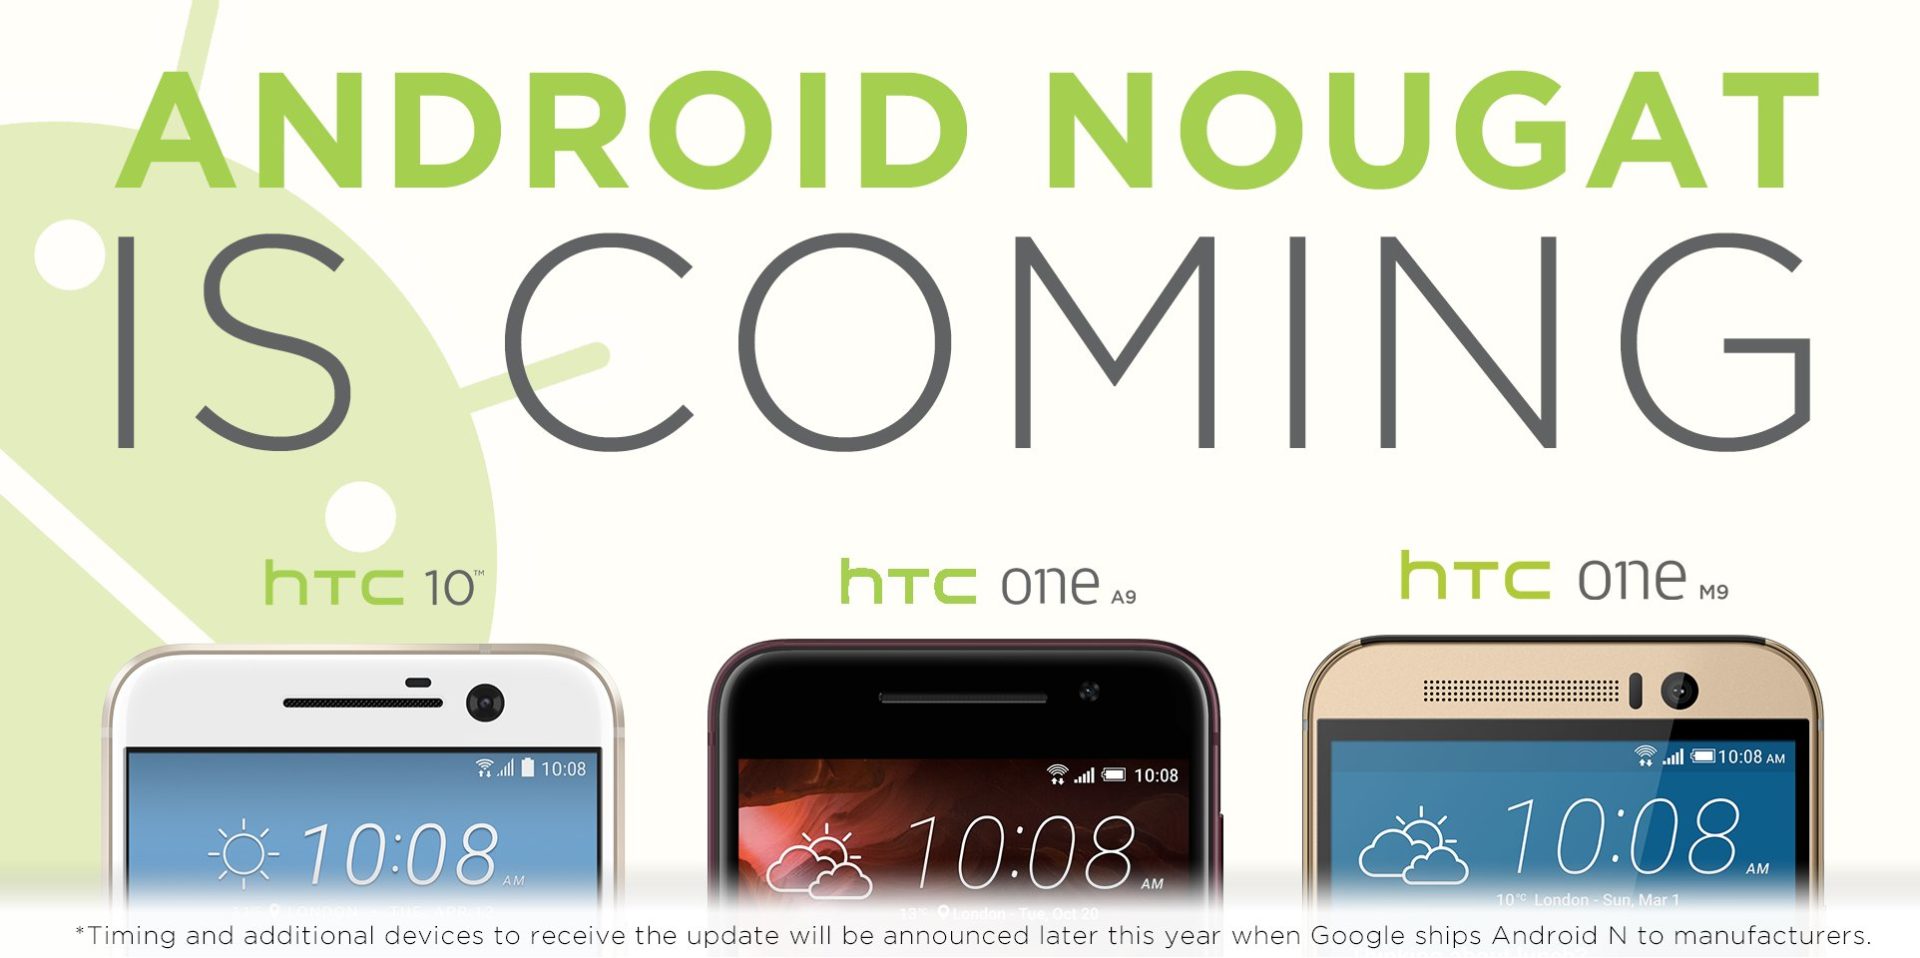 ใกล้เข้ามา!!! HTC ประกาศเตรียมอัพ Android N แล้ว ในรุ่น HTC 10, One A9, และ One M9